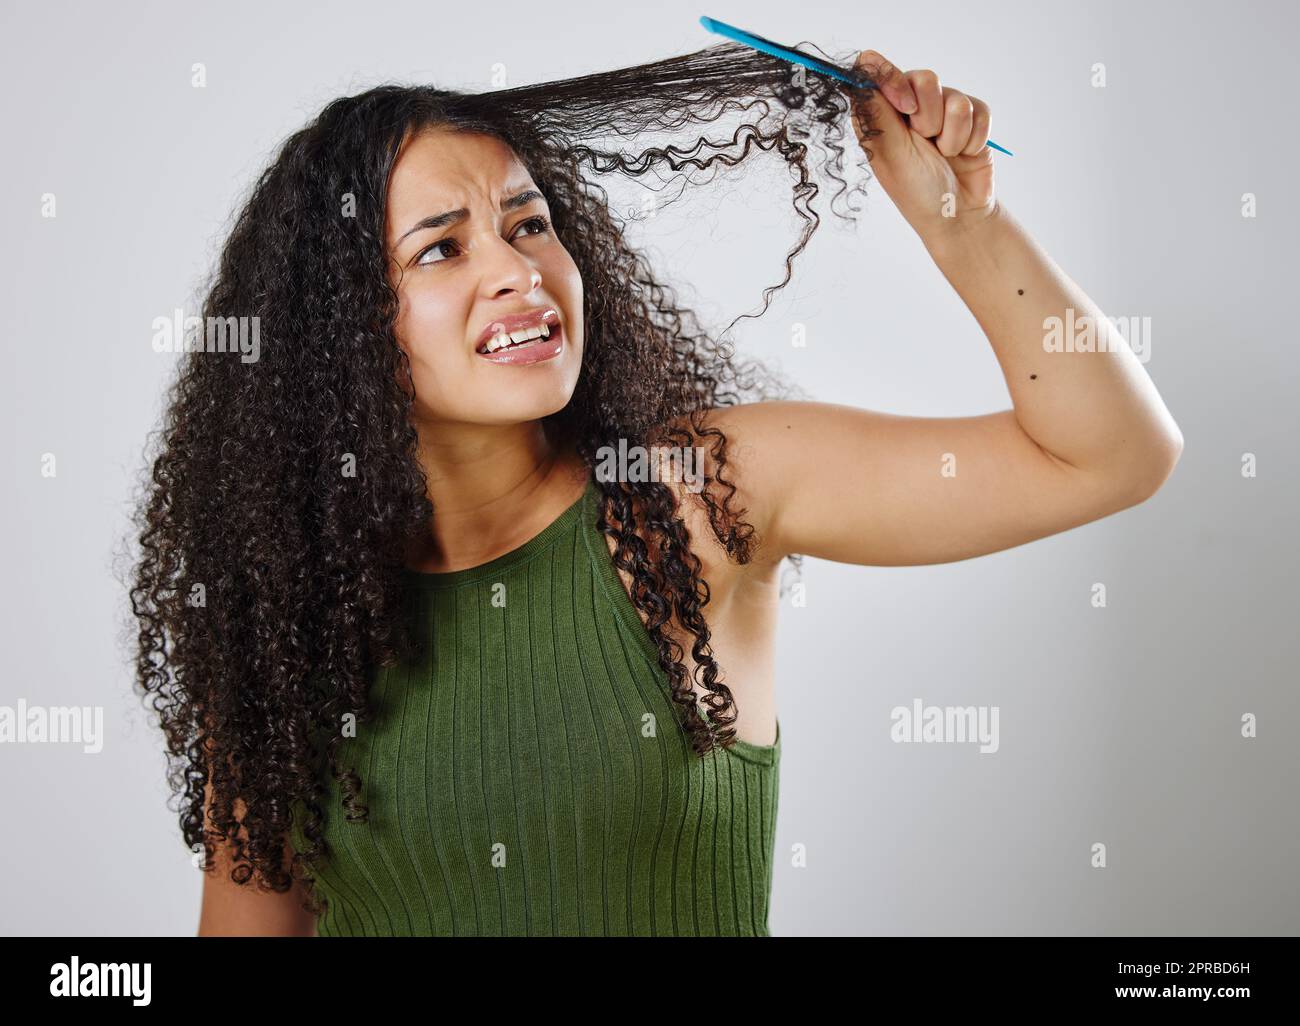 Das Kämmen meiner Haare ist nie eine leichte Aufgabe. Eine Frau runzelte die Stirn, während sie ihr Haar vor einem grauen Hintergrund kämmte. Stockfoto